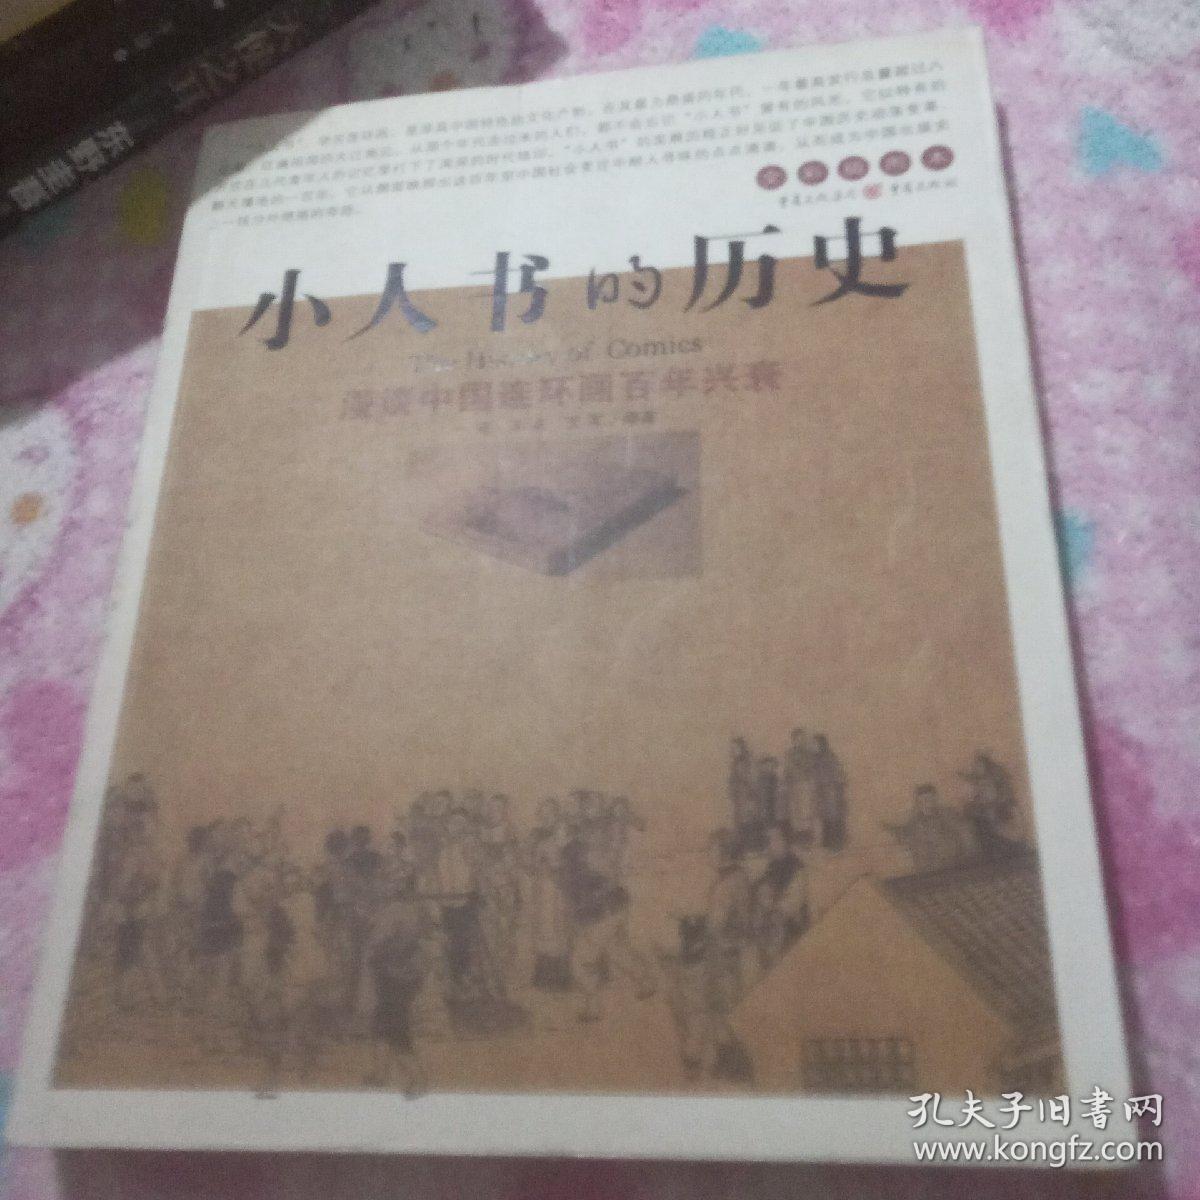 小人书的历史：漫谈中国连环画百年兴衰